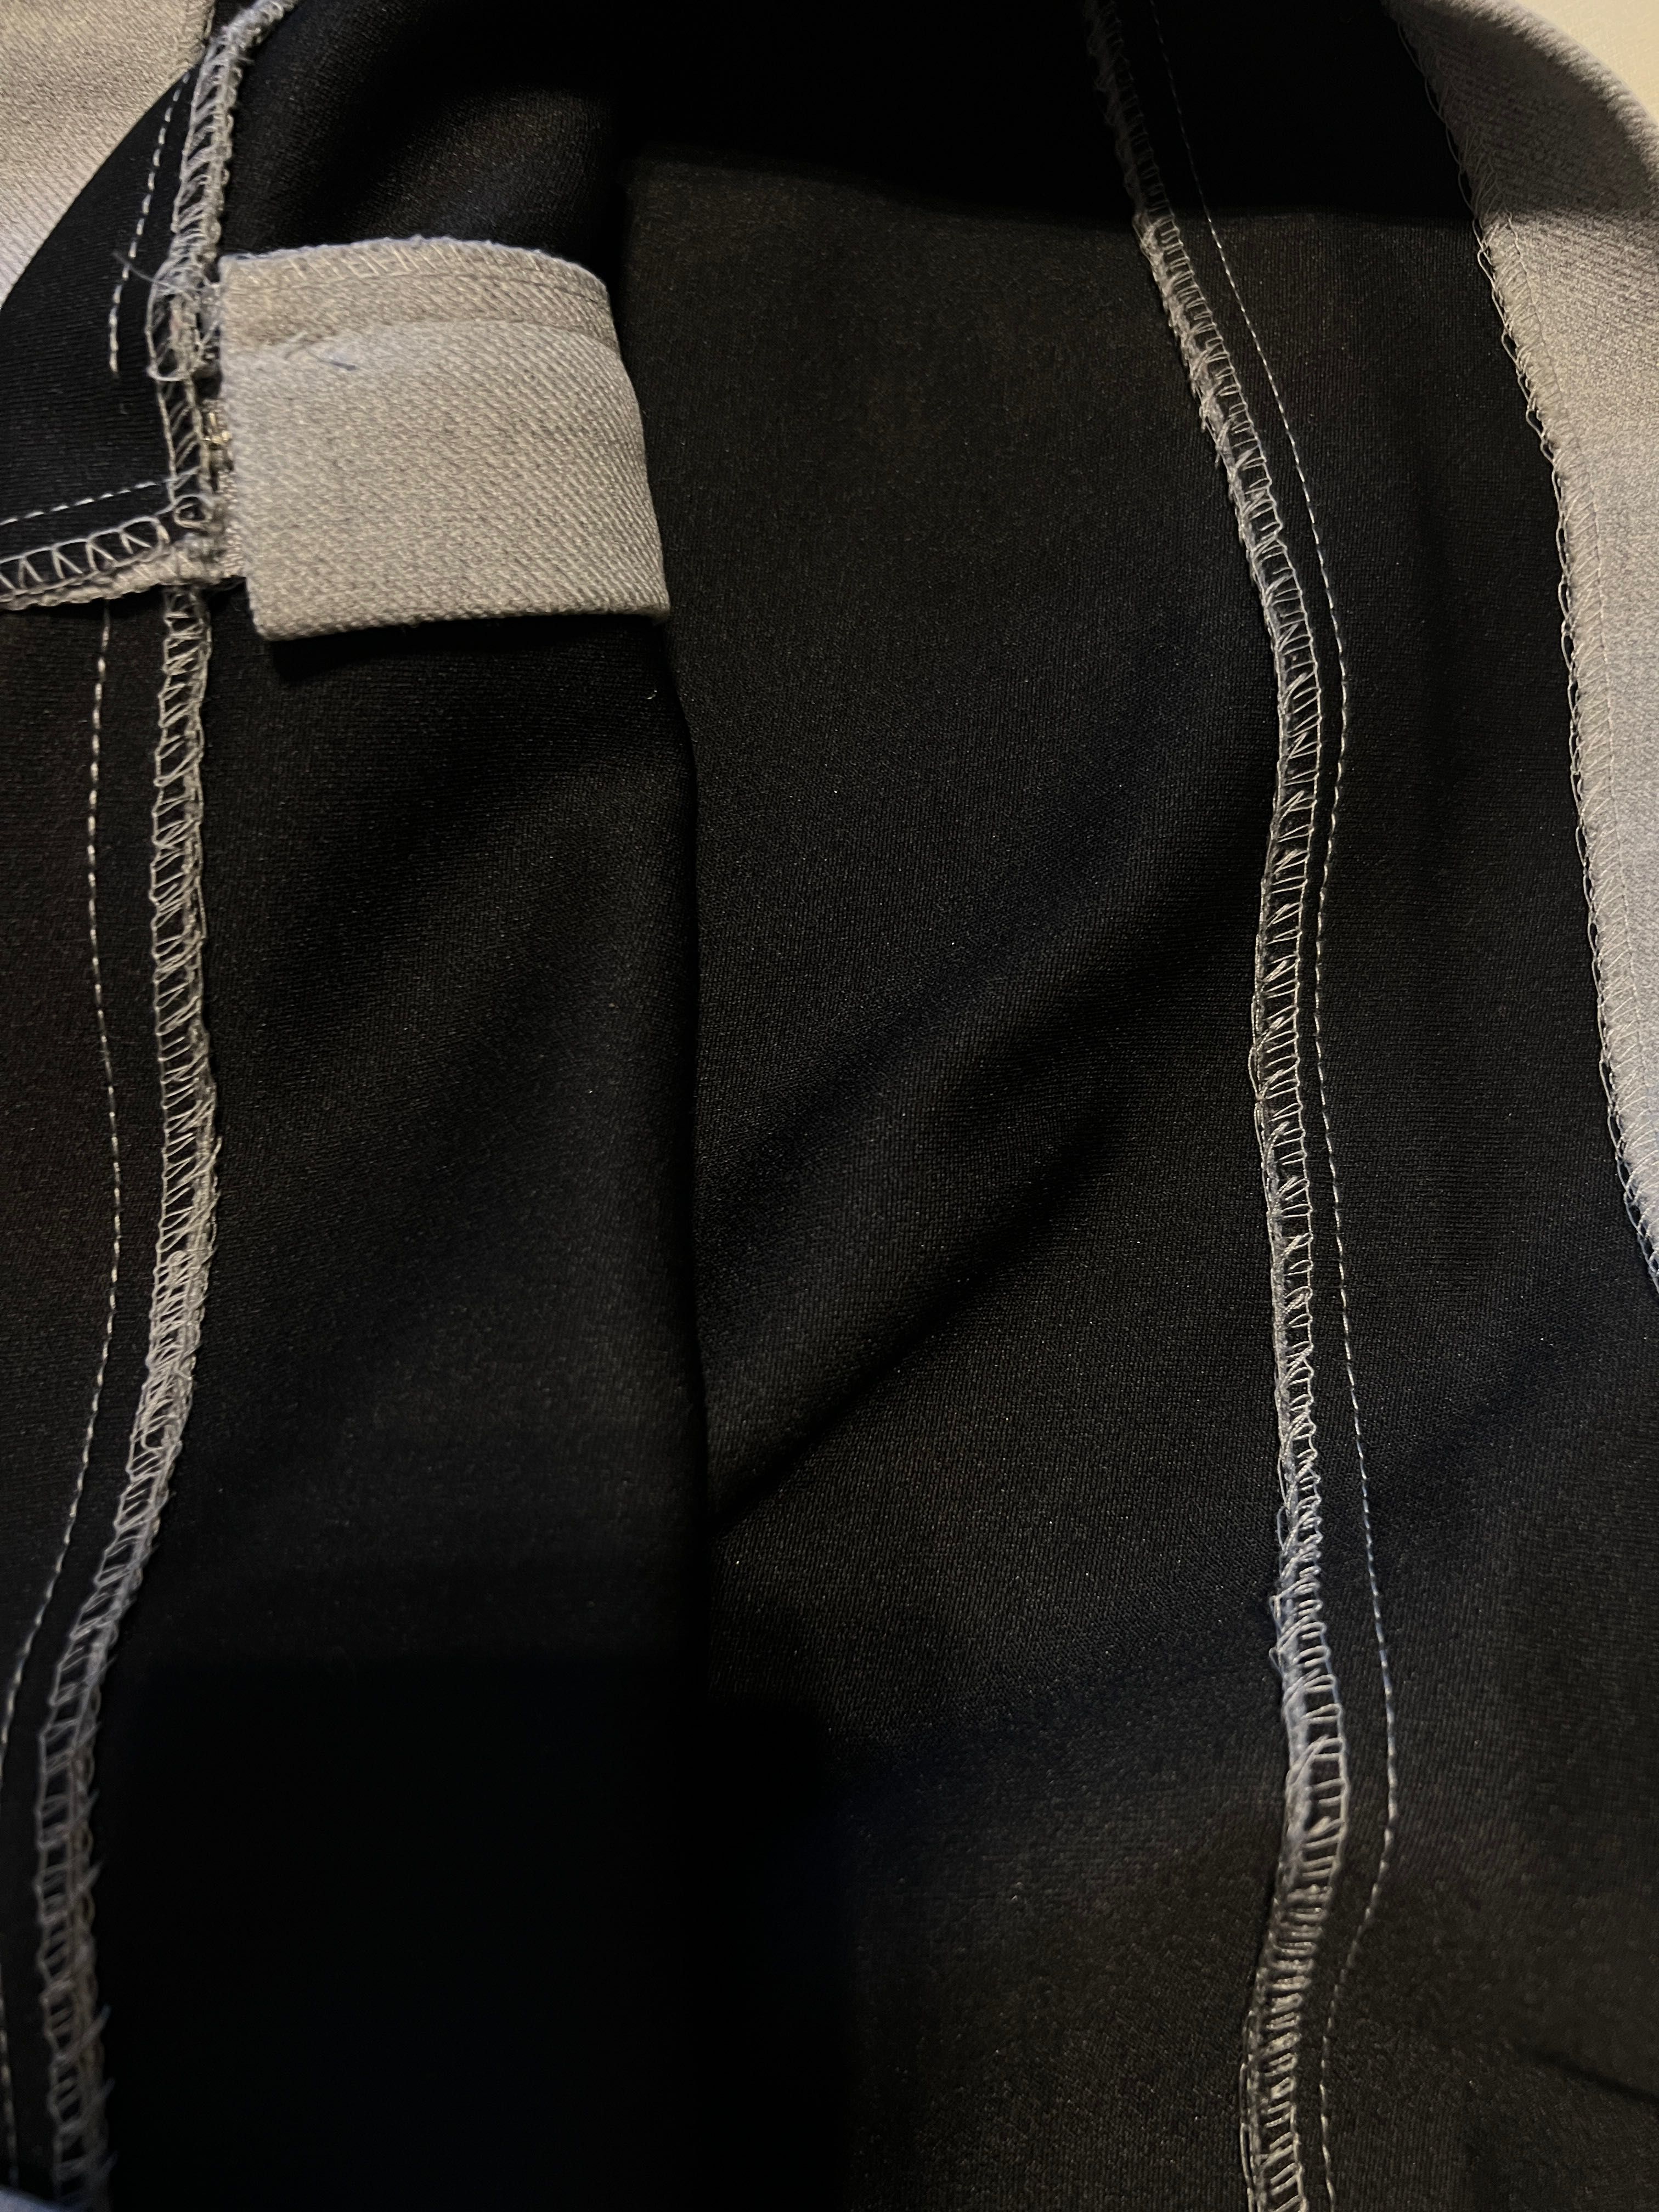 Szara spódniczka jesień H&M 42, mini spódniczka asymetryczna y2k, 00s